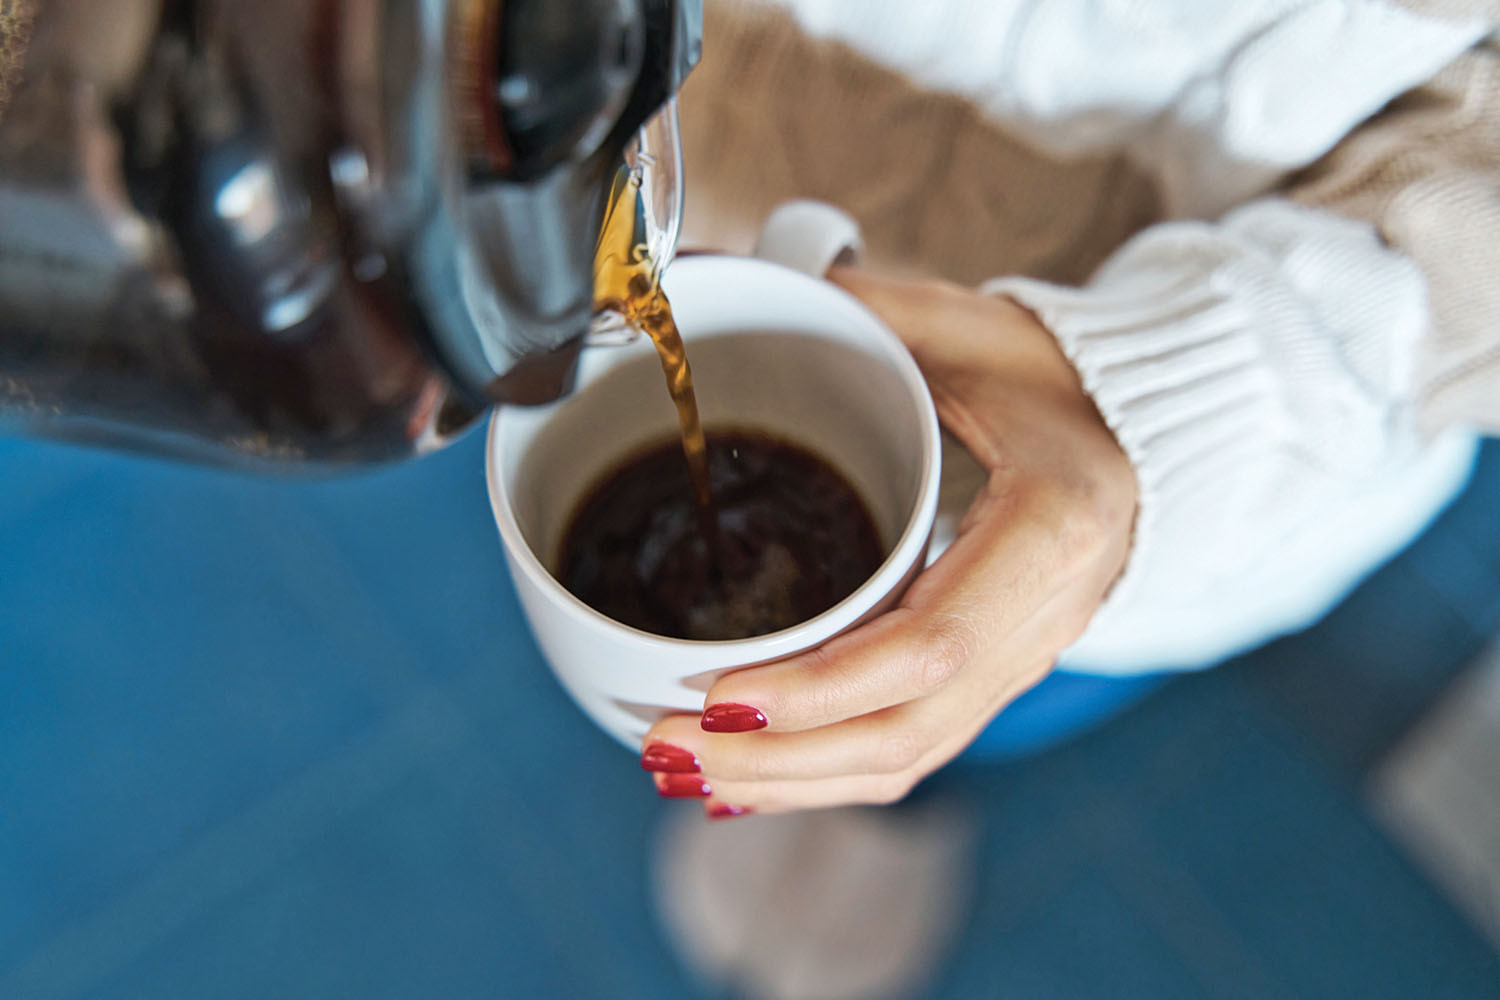 photo recadrée des mains d'une femme tenant une tasse dans sa main gauche et y versant du café à partir d'une carafe